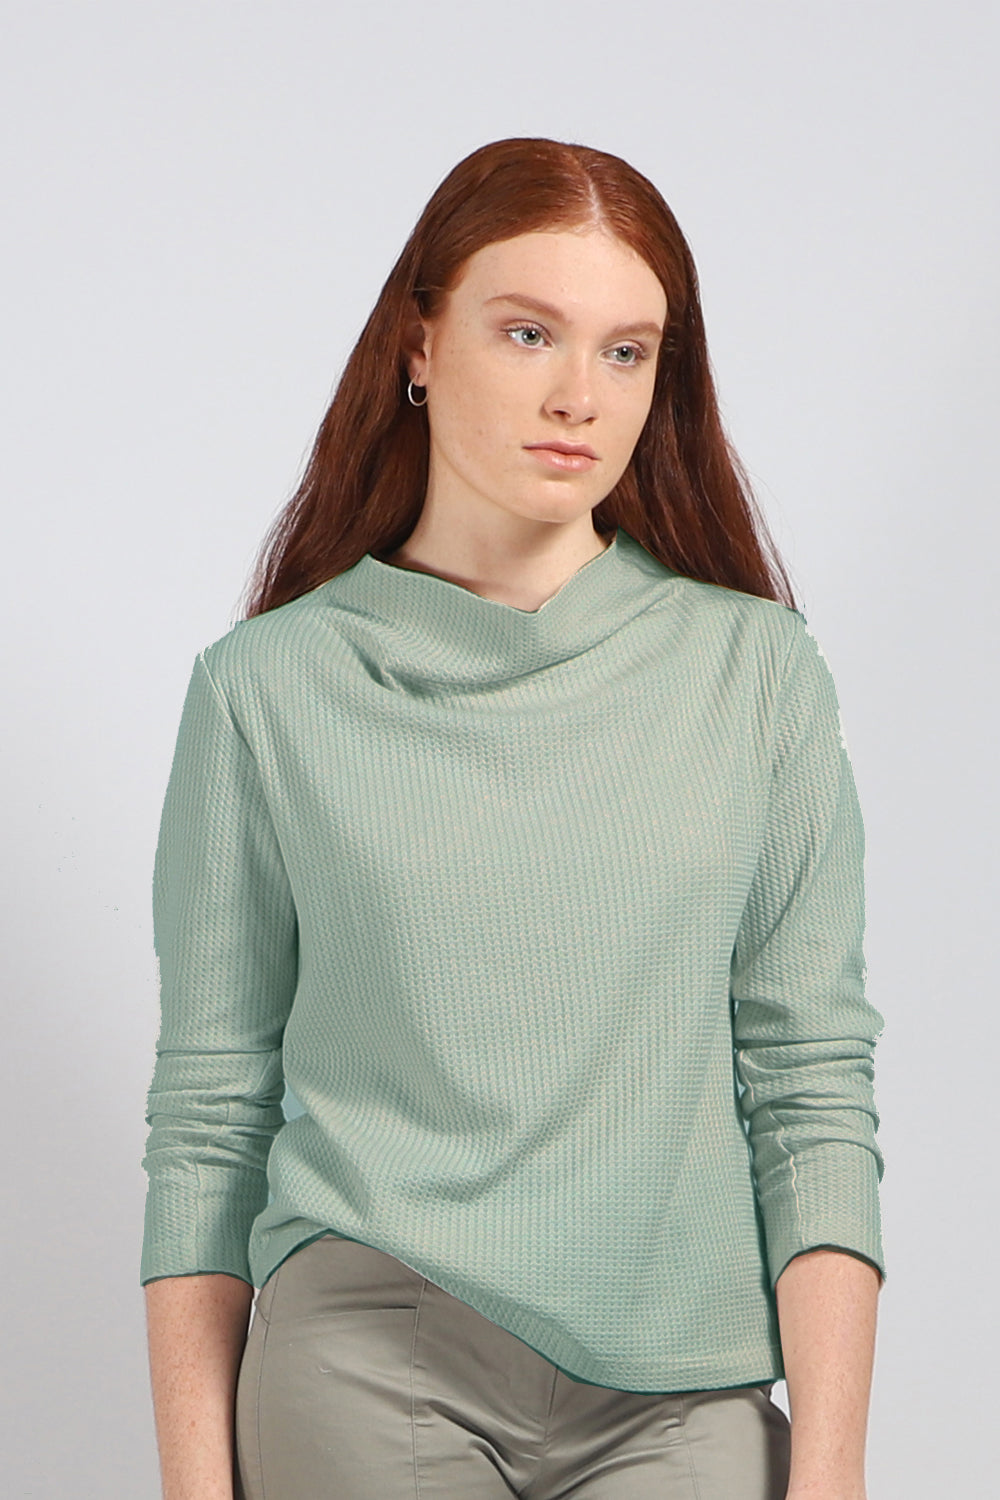 חולצת חורף מבד פיקה 100% כותנה בצבע ירוק מרווה - ברנרד